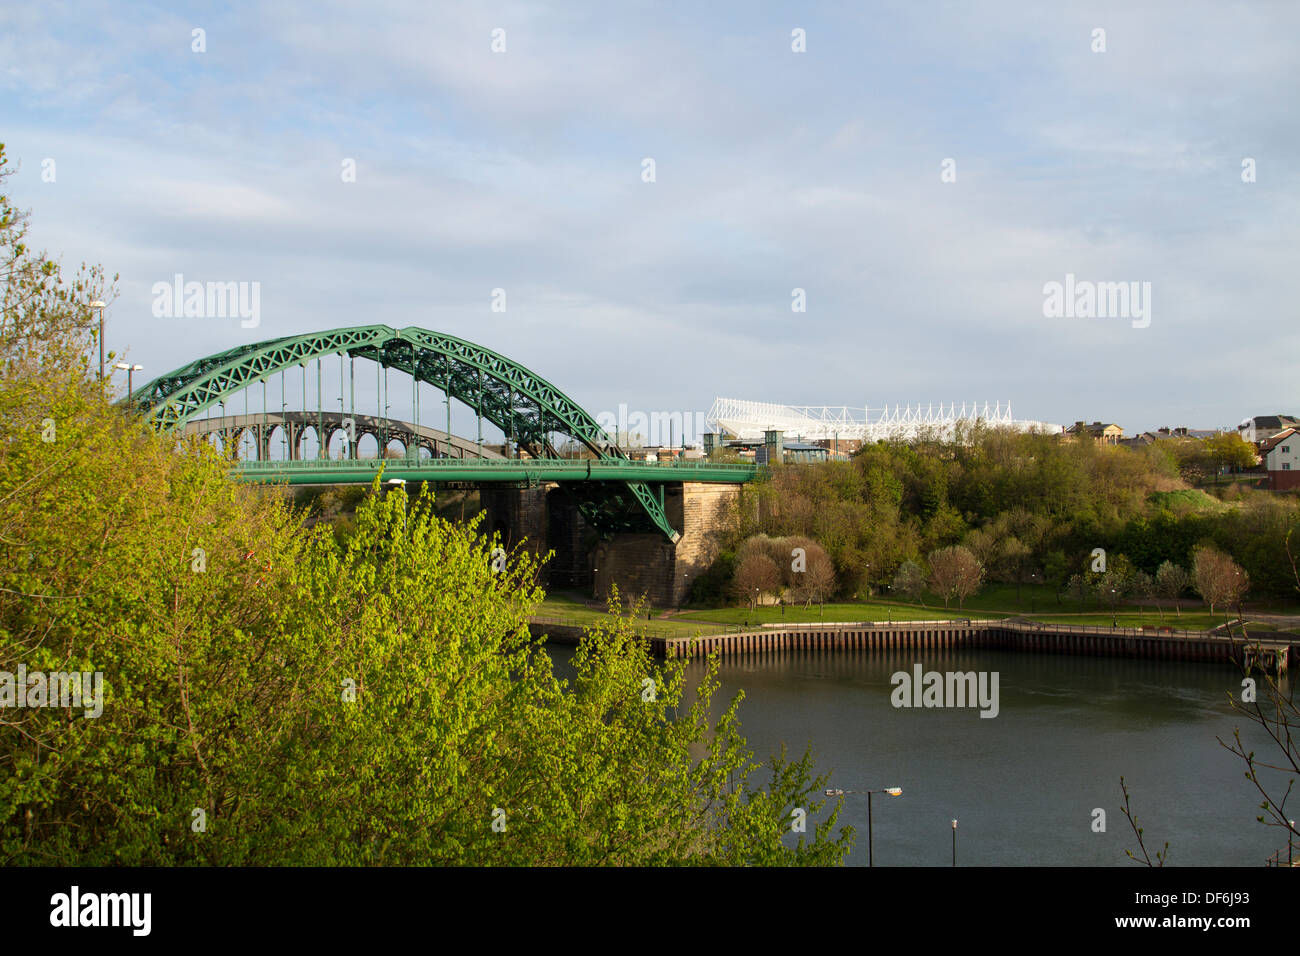 Wearmouth ponte che attraversa il fiume indossare a Sunderland con il ponte della ferrovia dietro di essa e 'stadium di luce', Nord Est Inghilterra Foto Stock